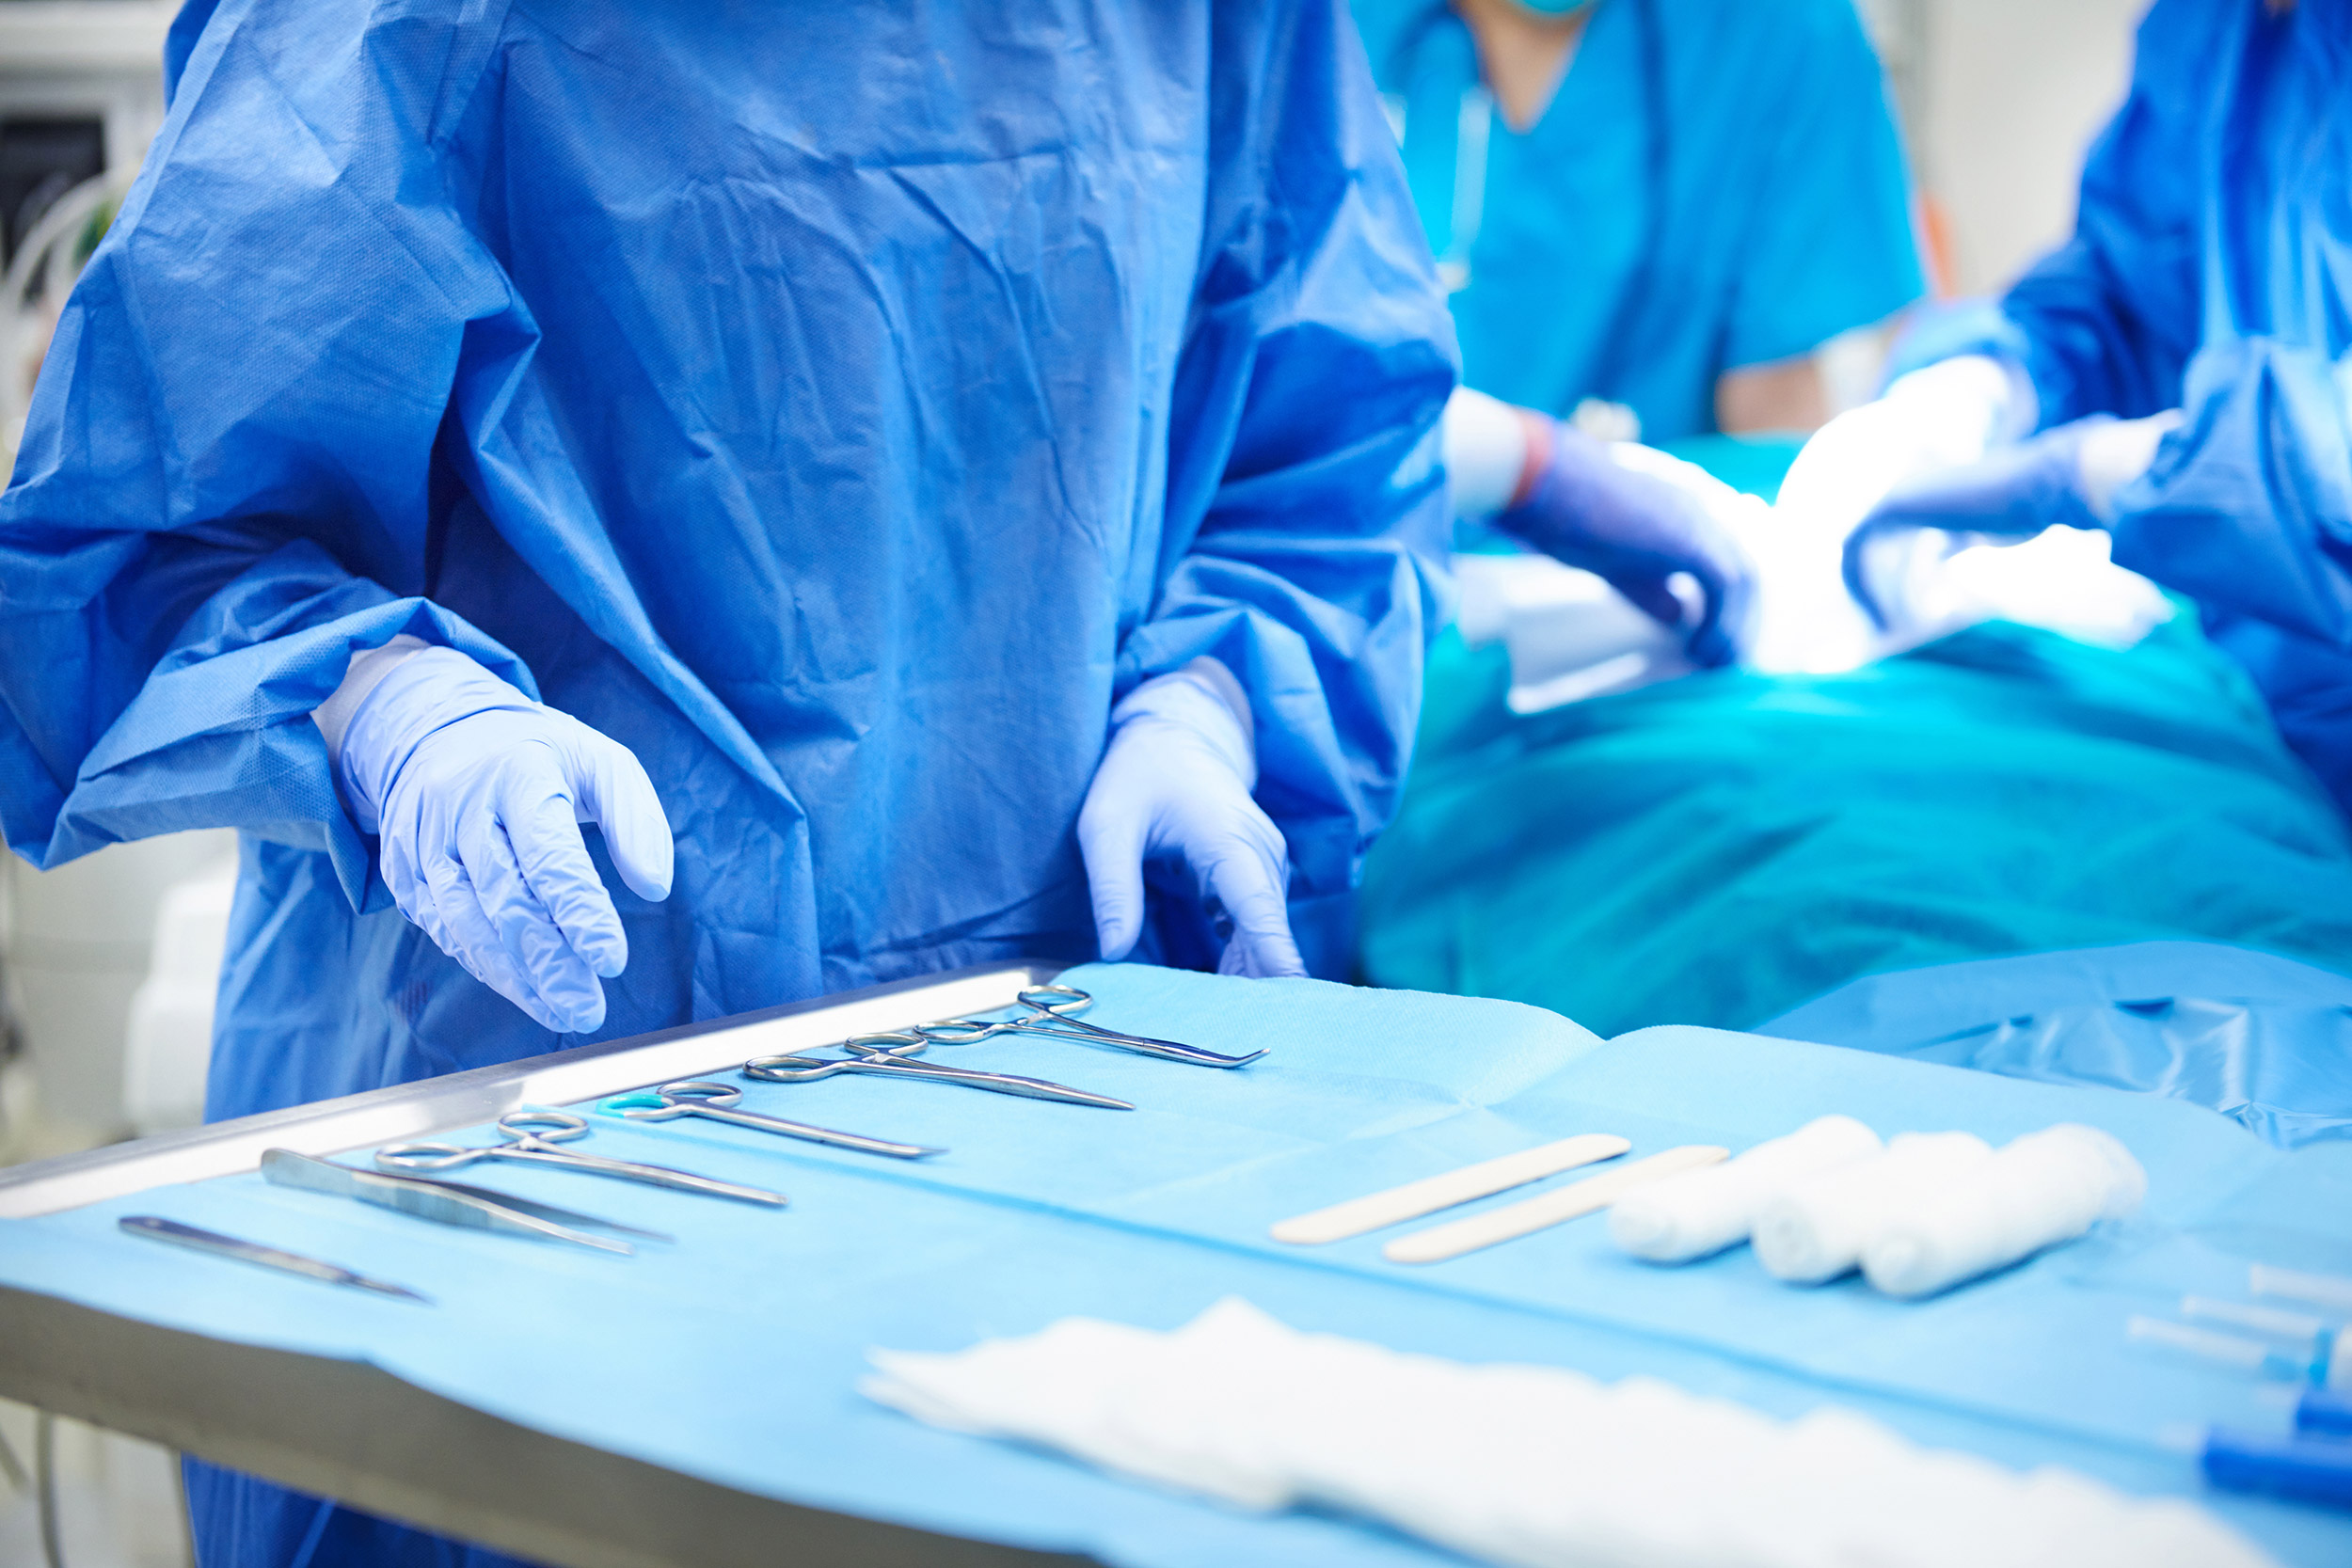 Operacijska dvorana, kirurzi, pacijent, medicinska oprema na stolu